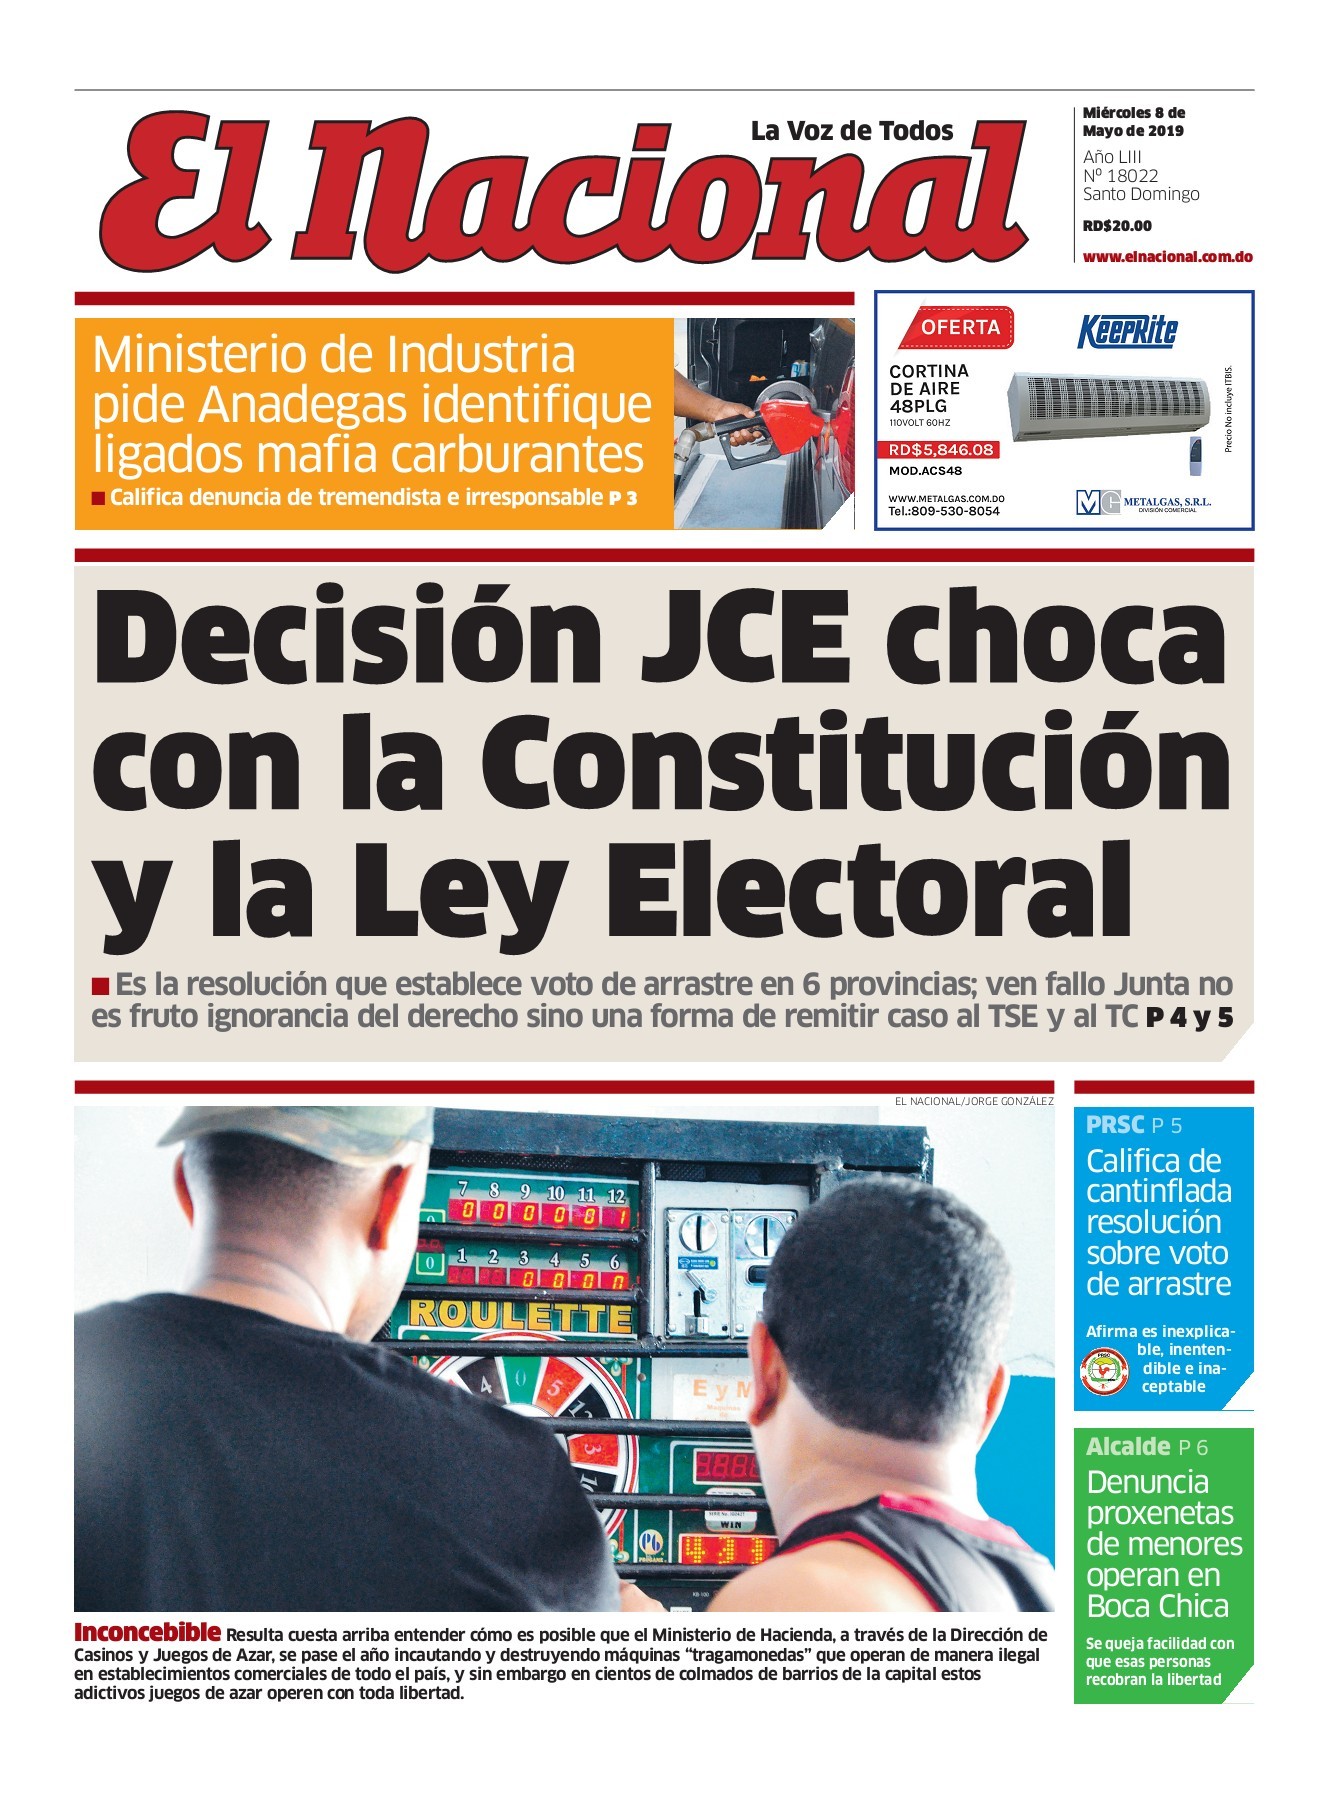 Portada Periódico El Nacional, Miércoles 08 Mayo 2019